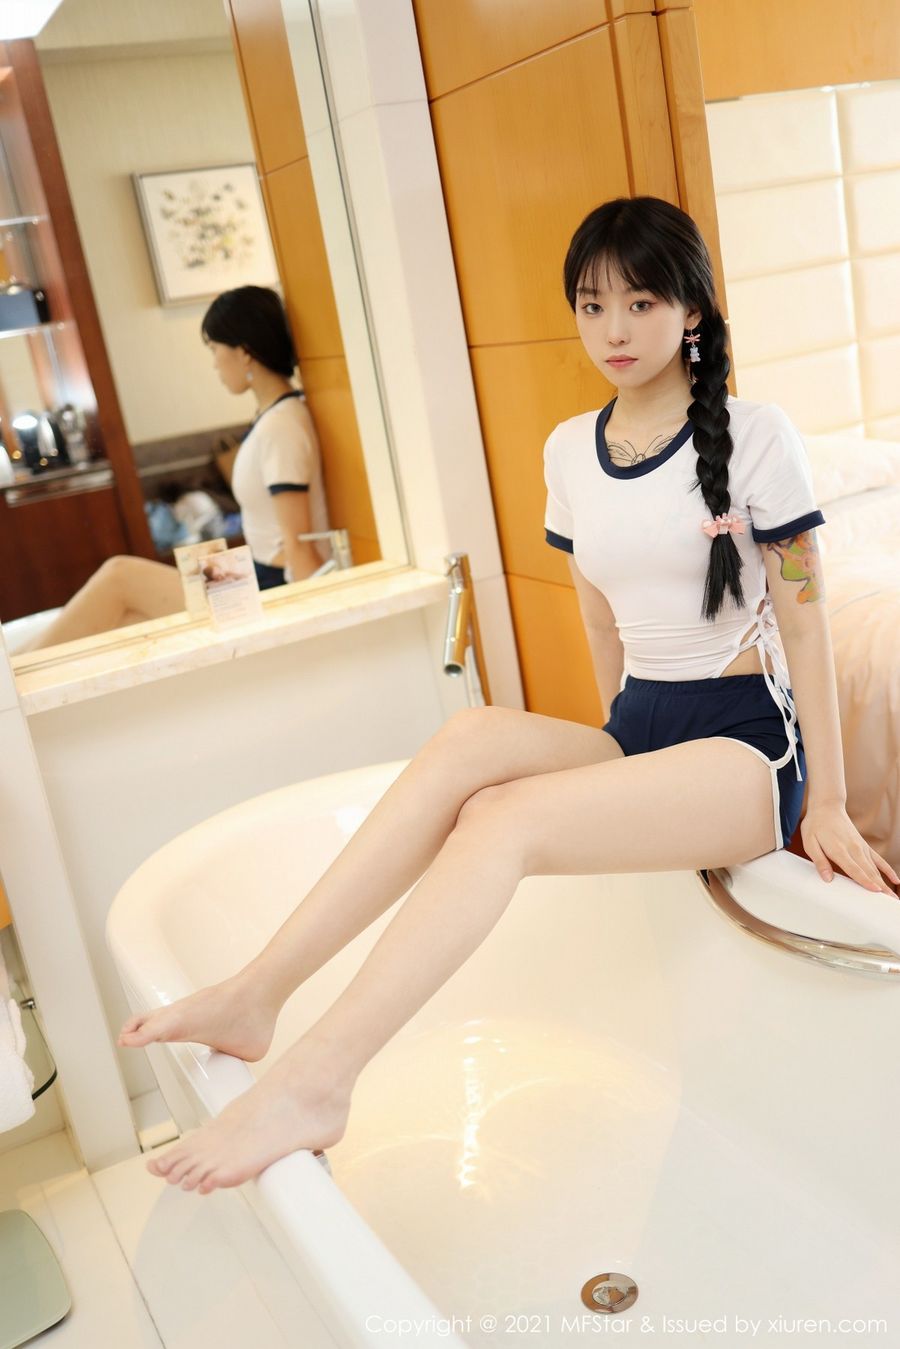 美女模特小奶瓶呜呜马尾辫日系风格浴室场景写真